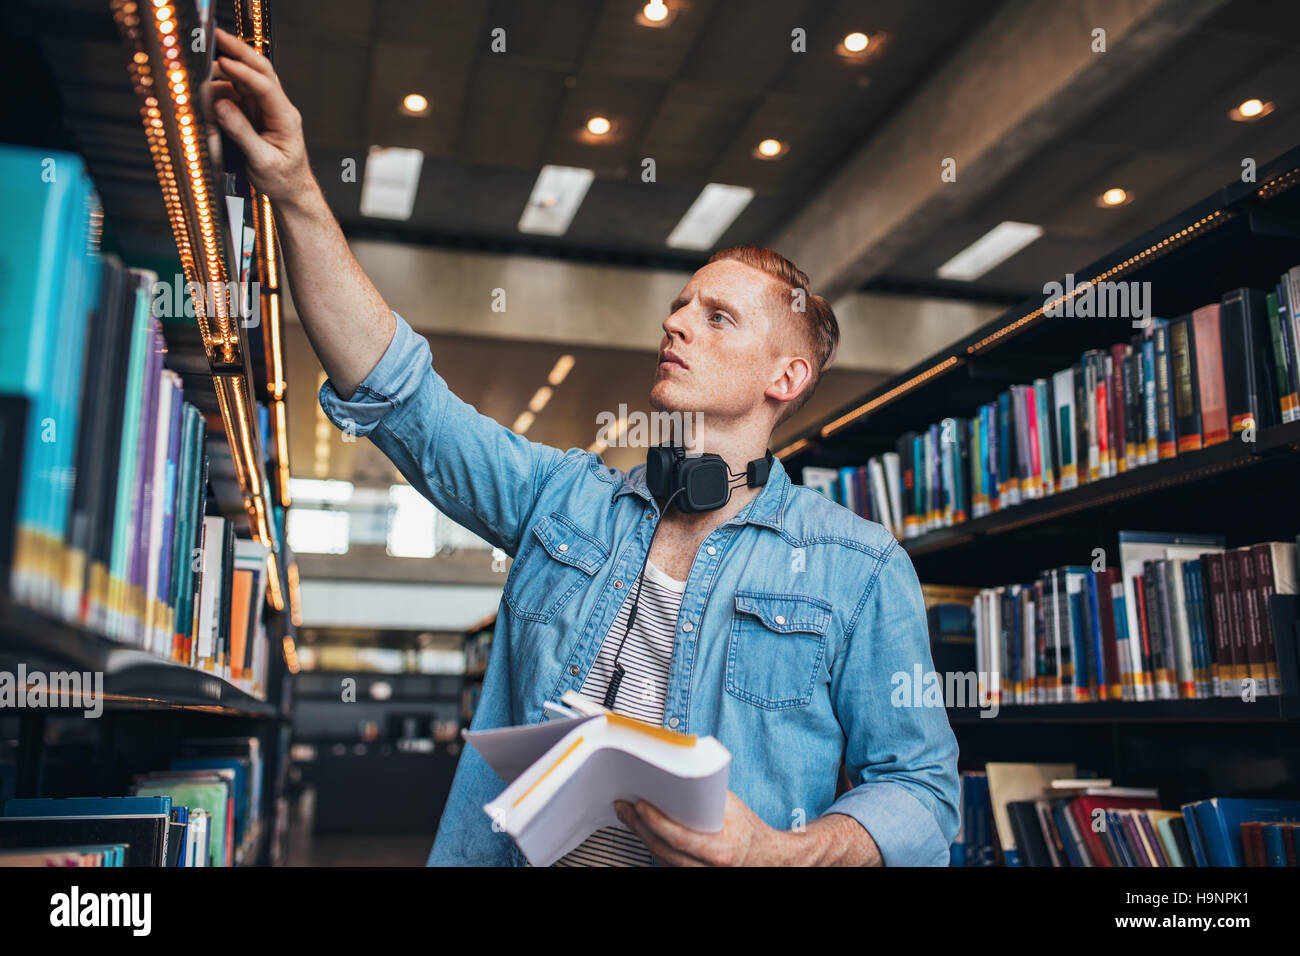 Aufnahme des jungen männlichen Studenten, die Bibliothek Regal Buch auswählen. Studentin in der Bibliothek zu studieren. Stockfoto